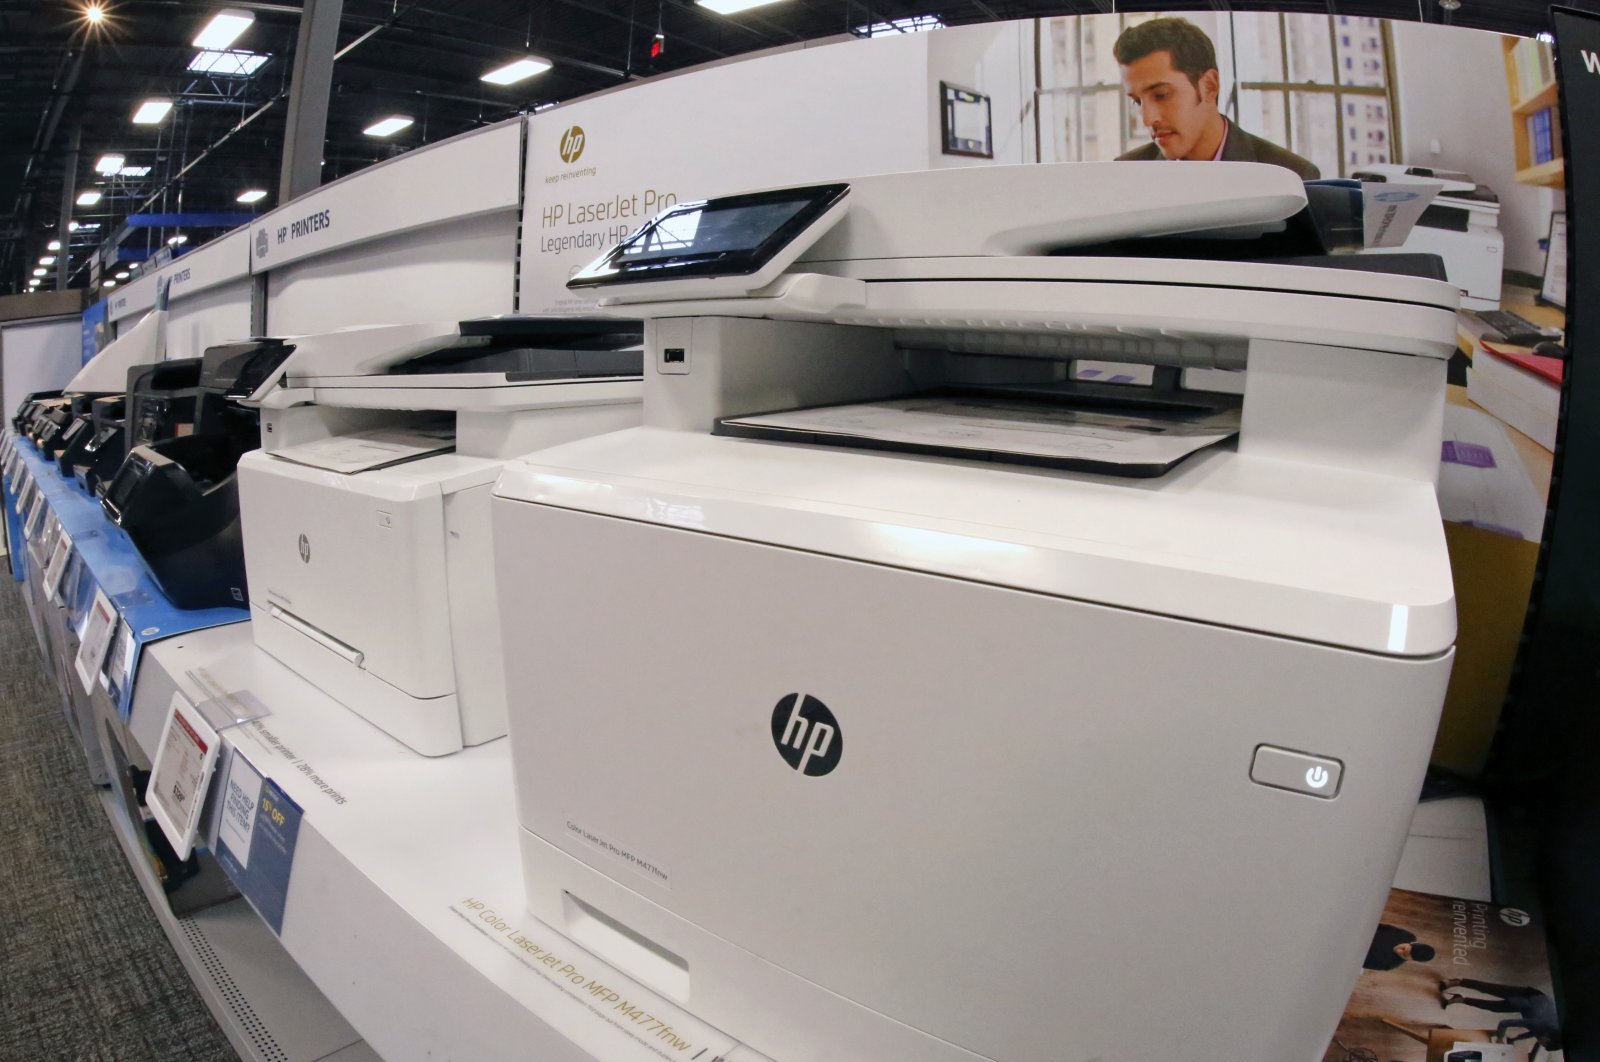 Kerentanan keamanan ditemukan di lebih dari 150 model printer HP